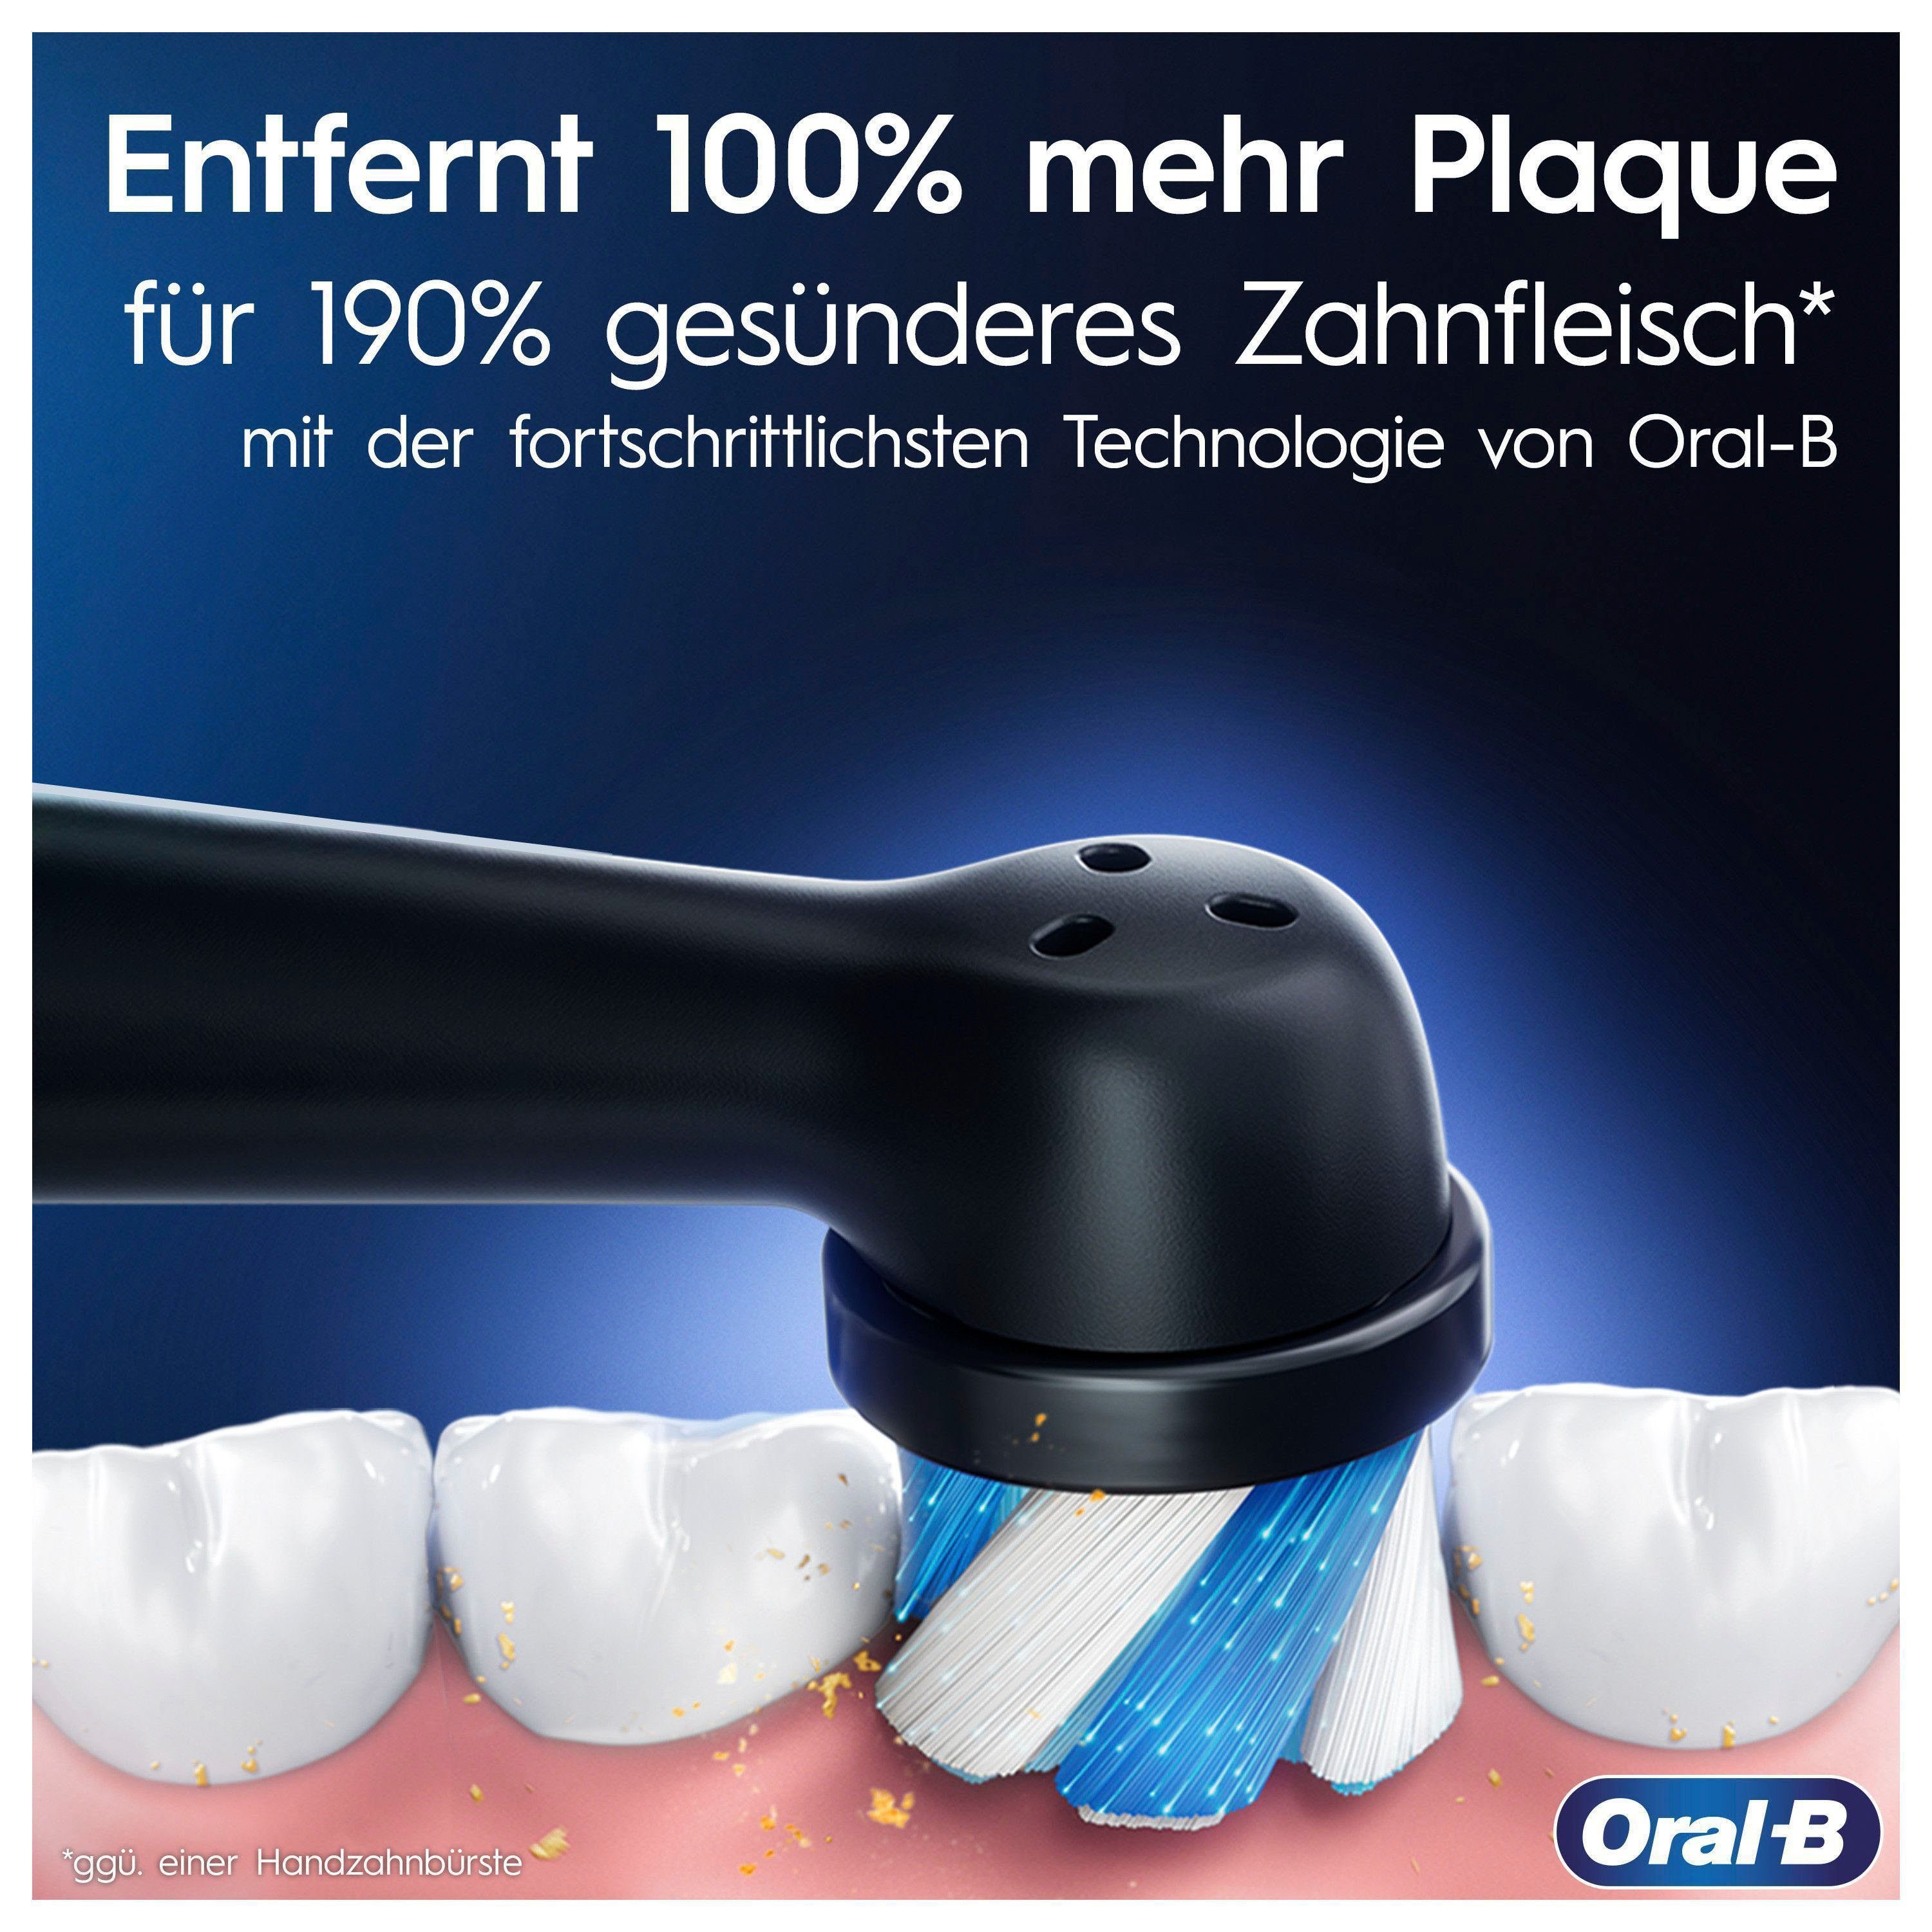 Oral-B Elektrische Zahnbürste iO 5 Aufsteckbürsten: 2 Reiseetui mit Putzmodi, alabaster St., white Magnet-Technologie, 7, Display